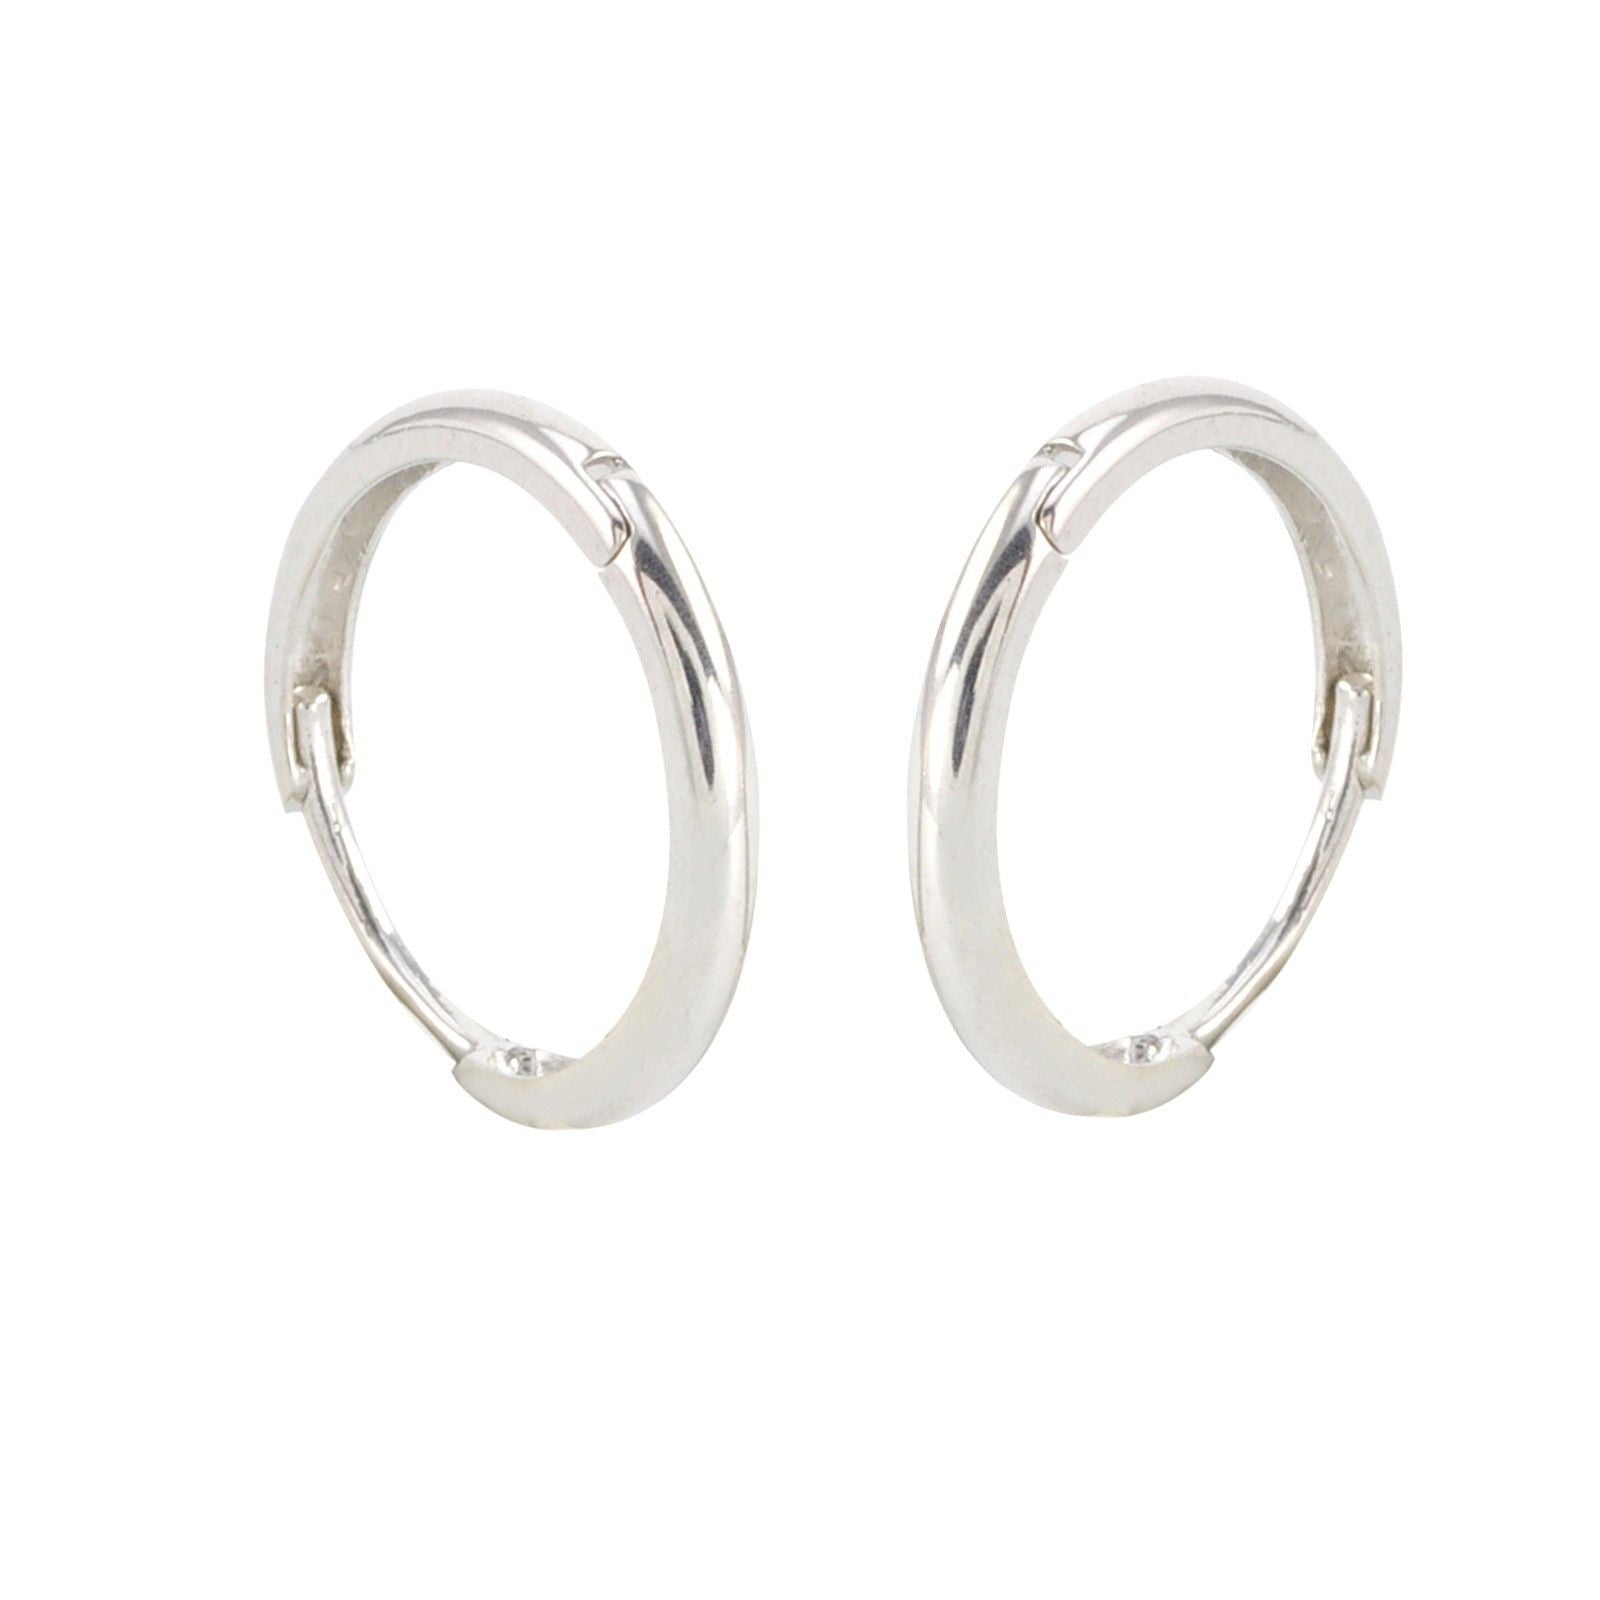 10k White Gold Hinged Hoop Earrings 15mm Medium-Large | Jewelryland.com